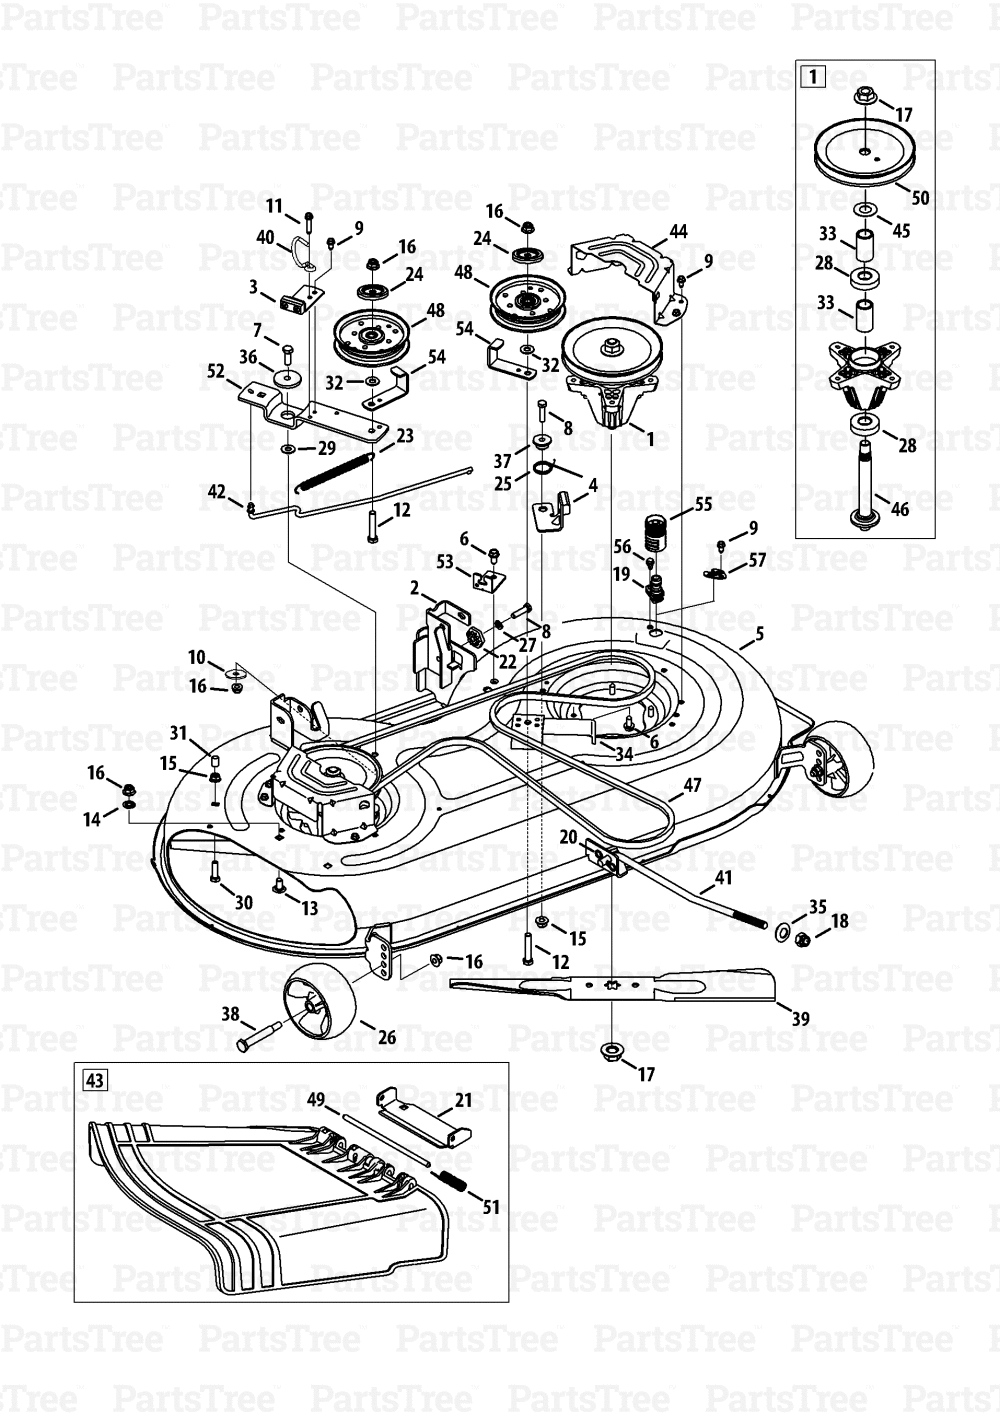 Mtd 38 riding mower manual